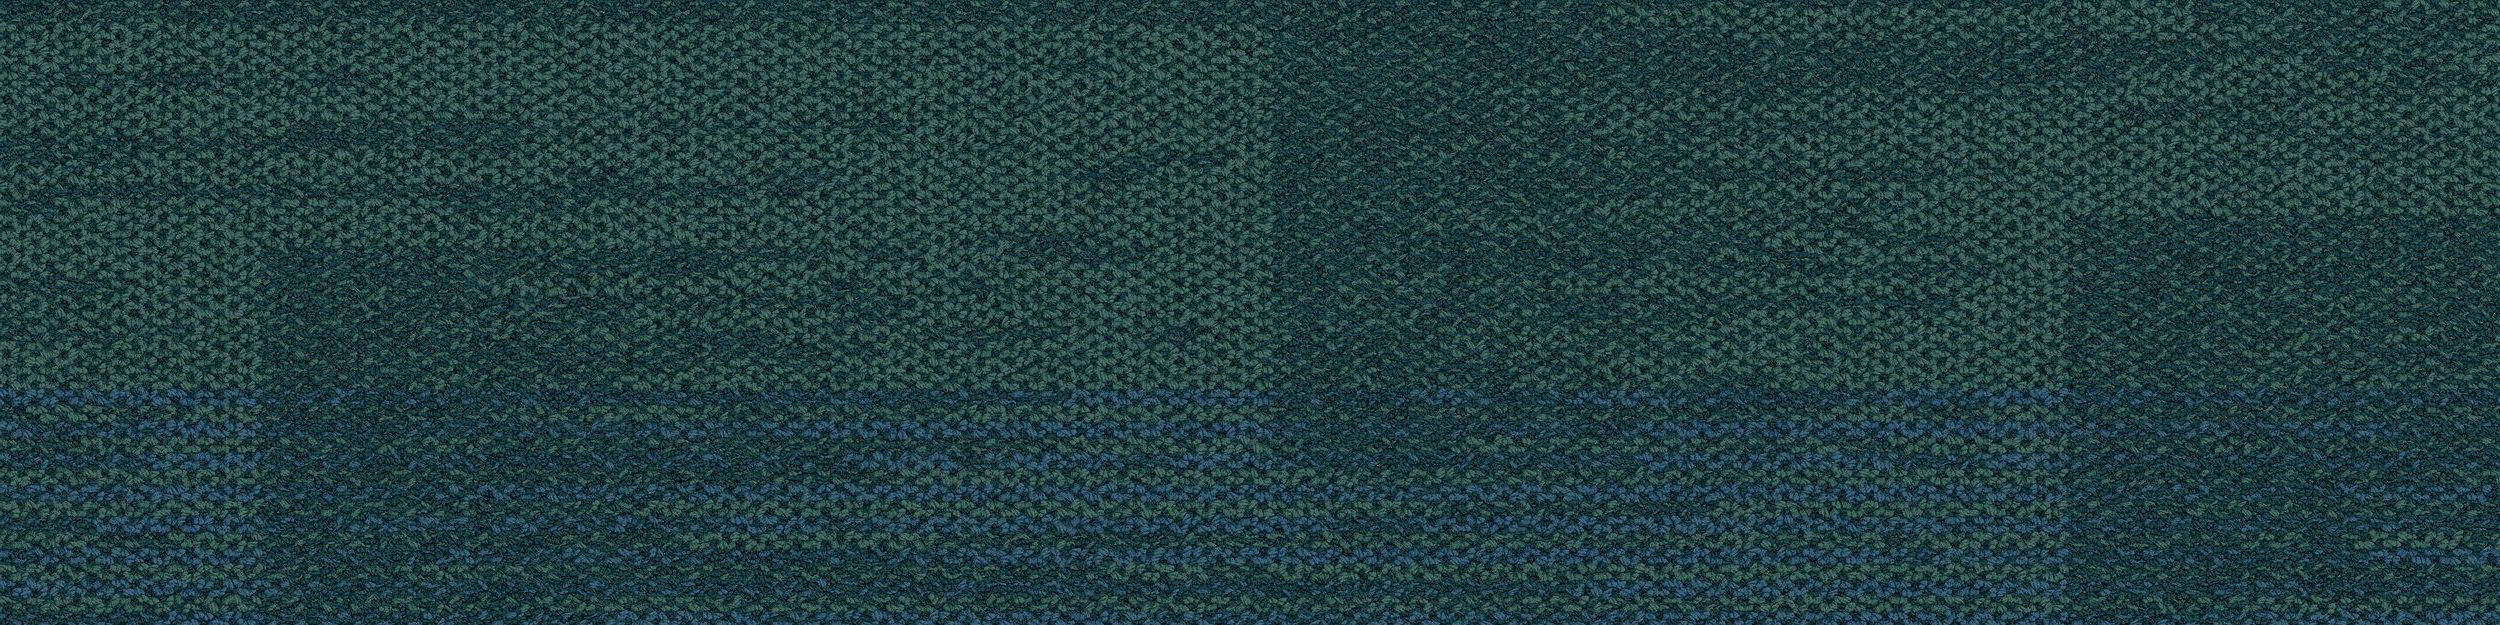 AE317 Carpet Tile In Aquamarine image number 2